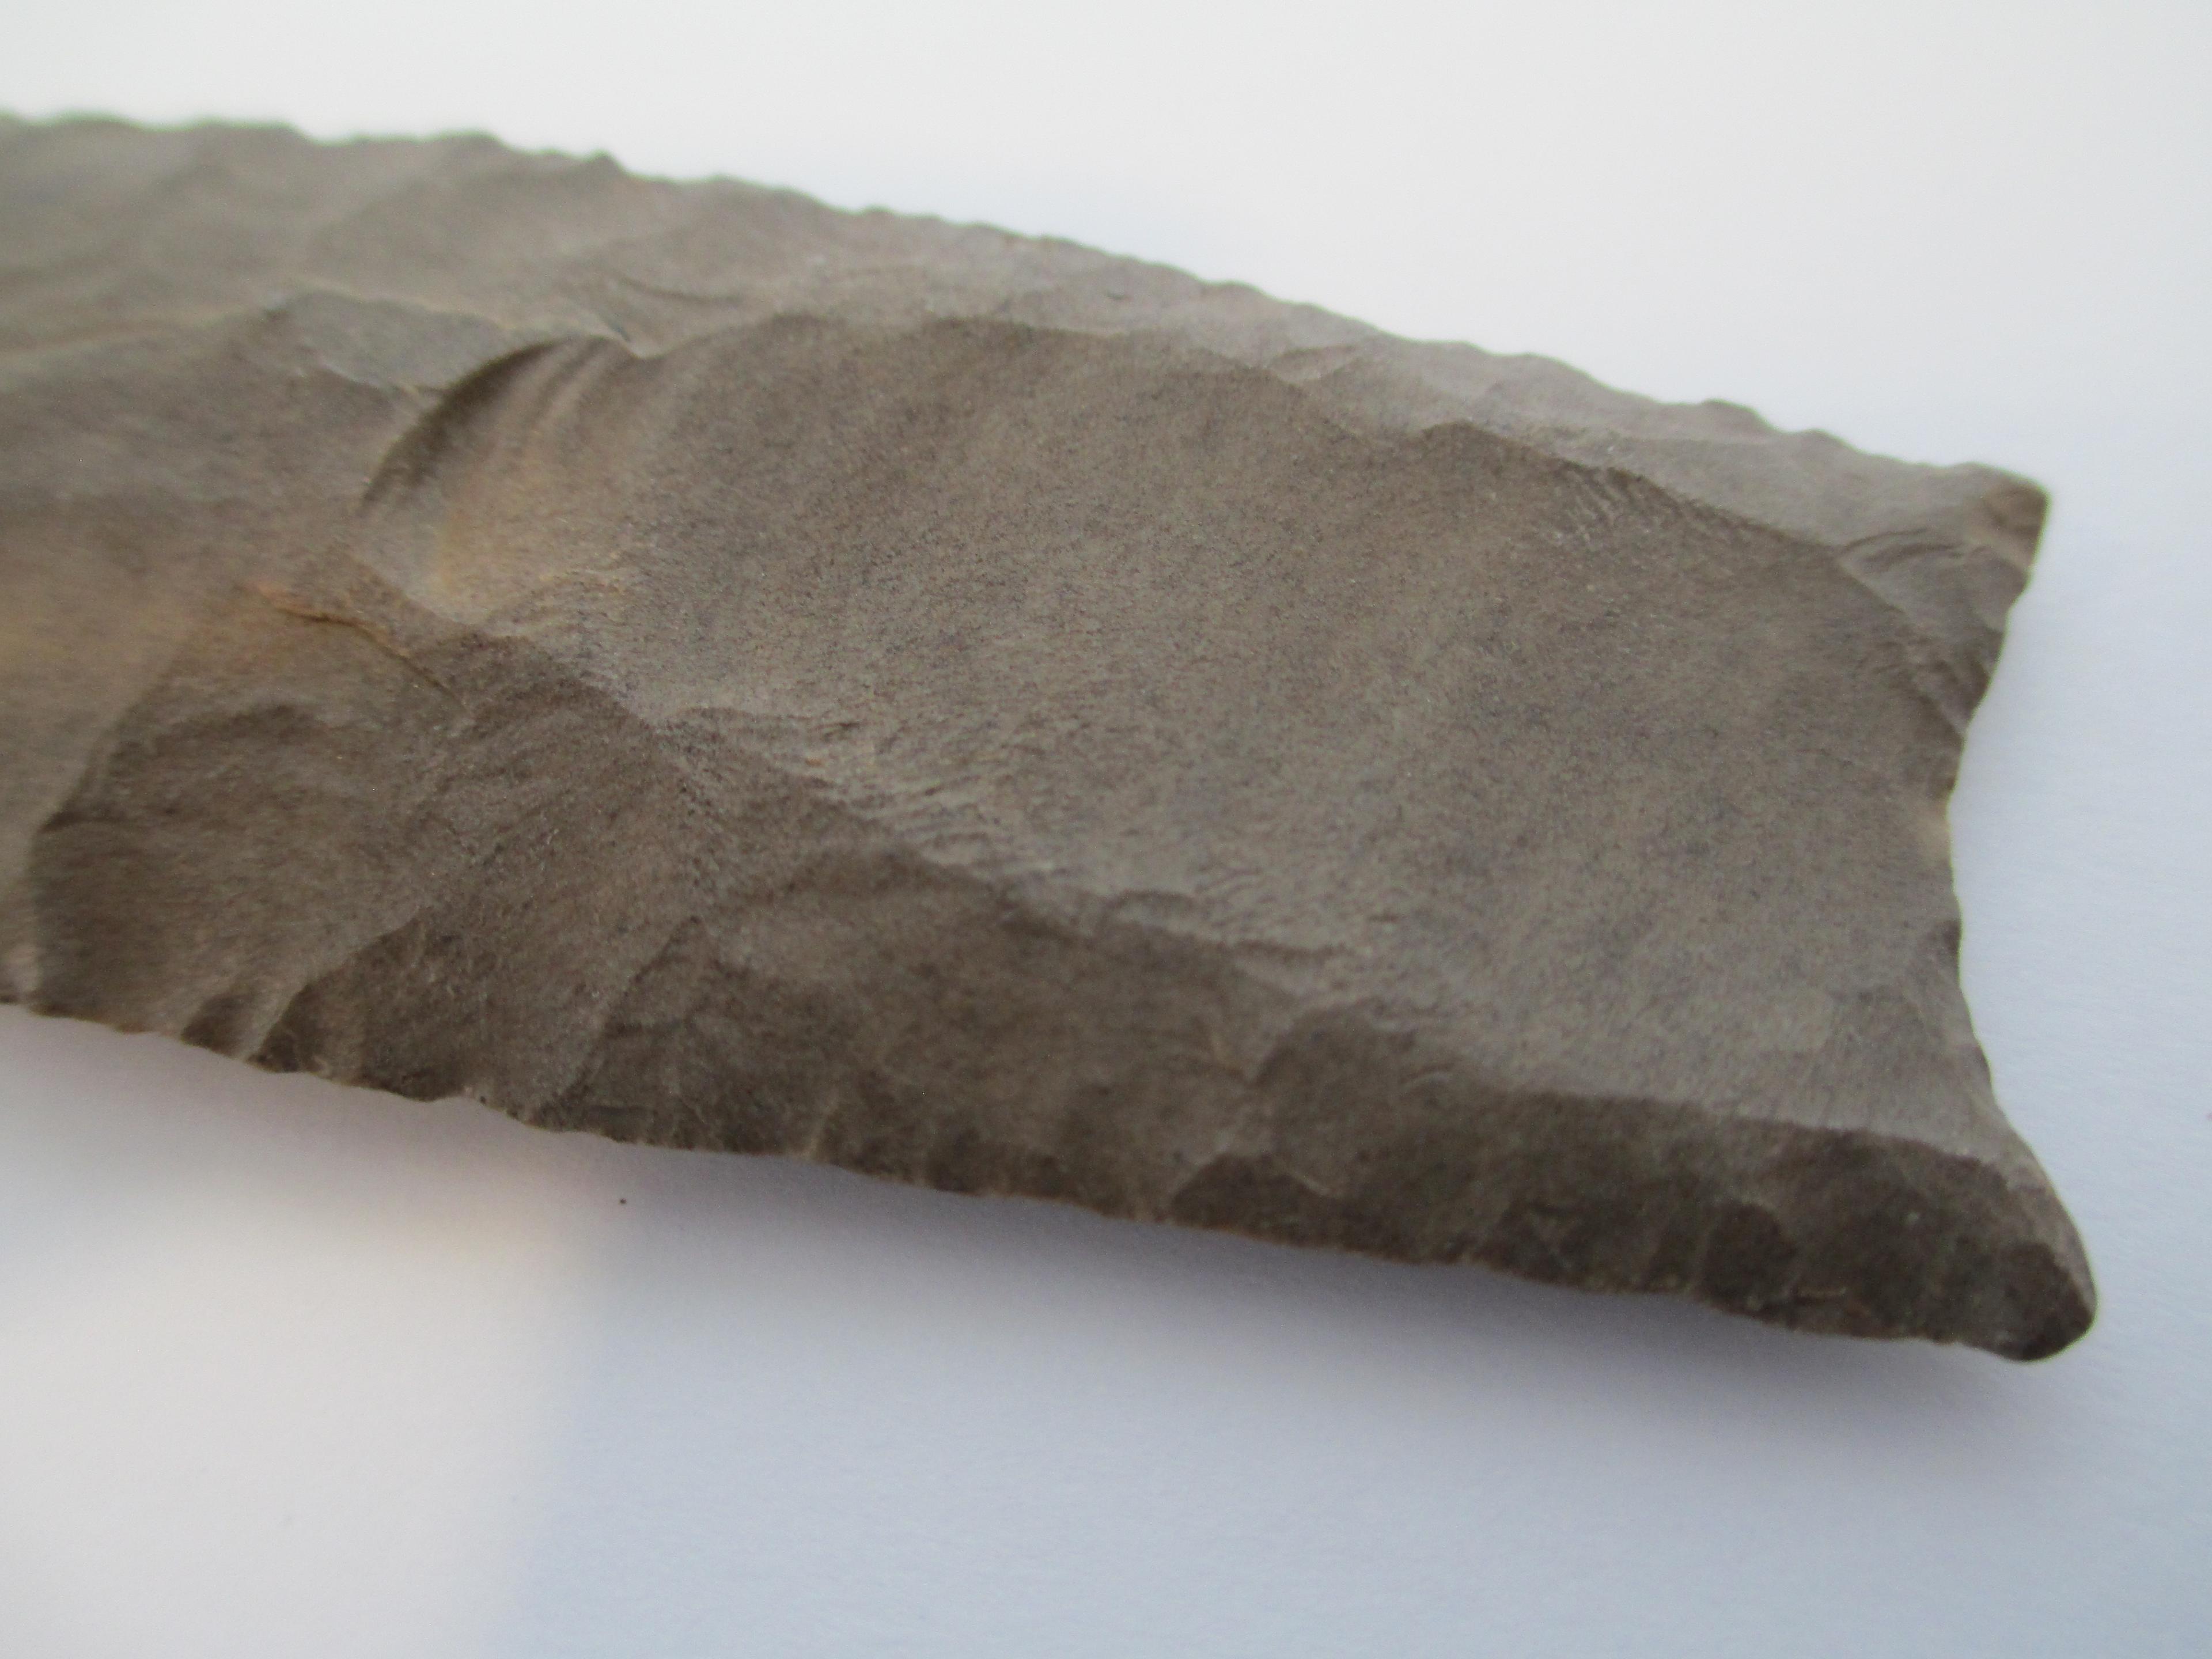 Clovis Point- Early Paleo (12,000-10,600 B.P.)